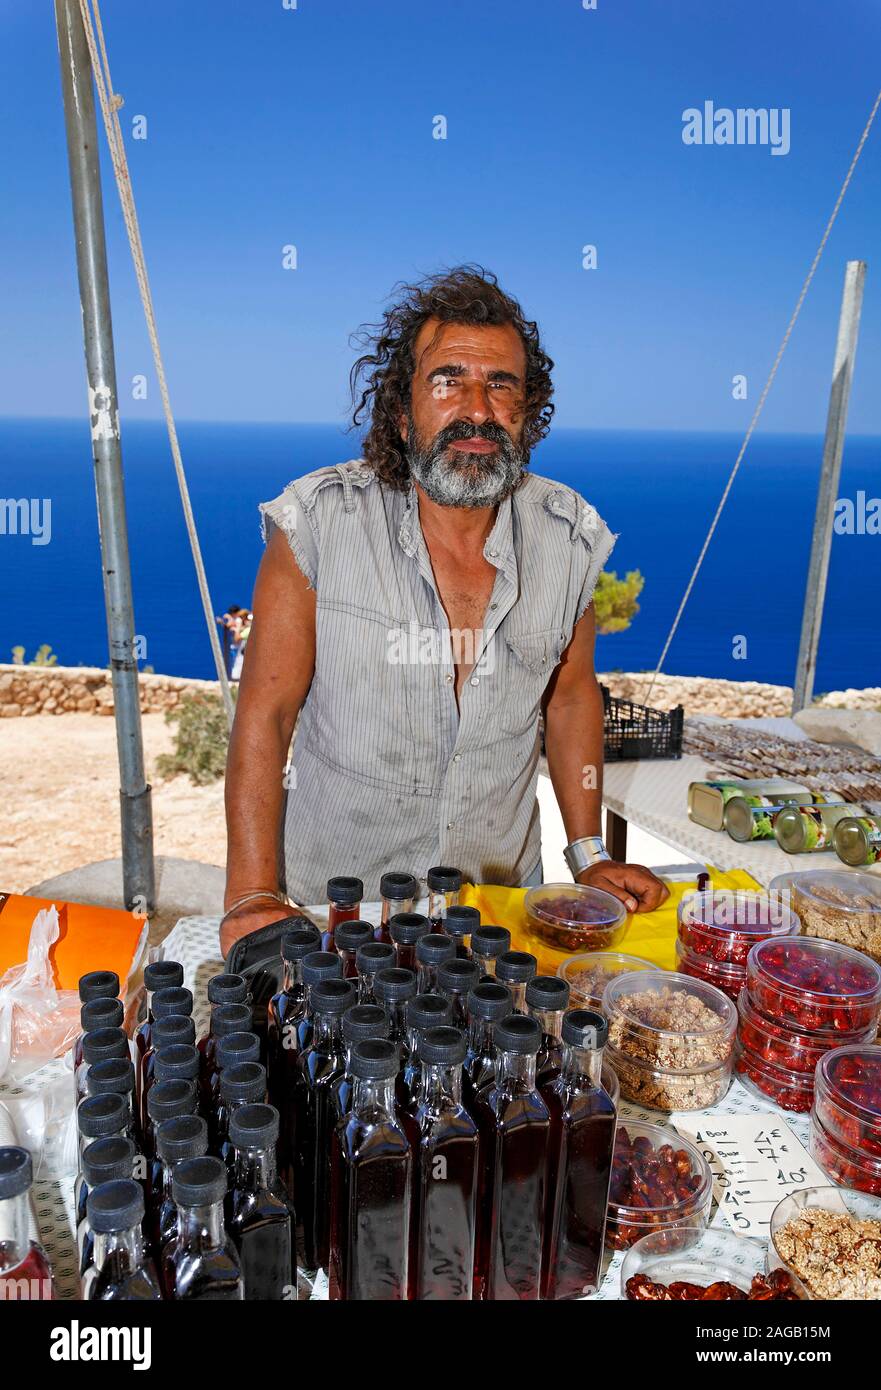 El hombre griego vende productos locales, tales como el aceite de oliva, la isla de Zakynthos, Grecia Foto de stock